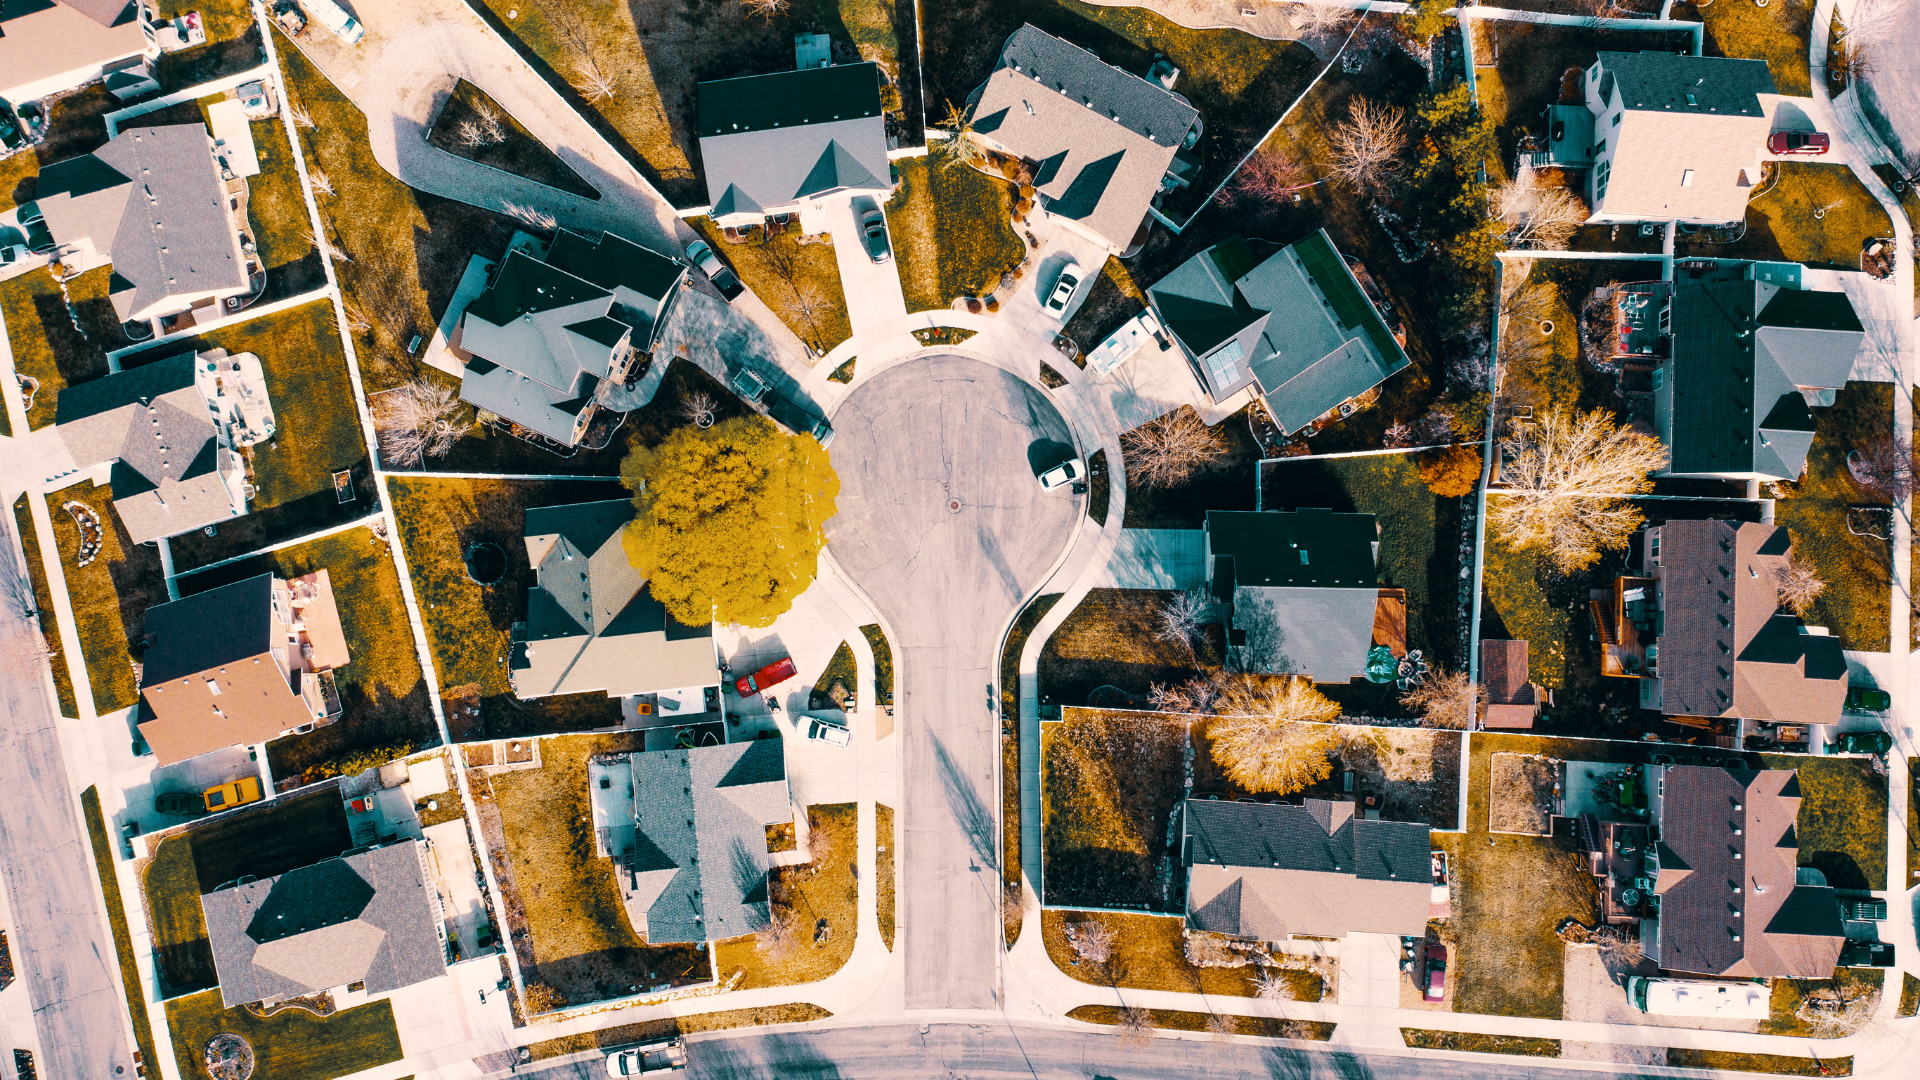 An overhead view of a residential neighbourhood.